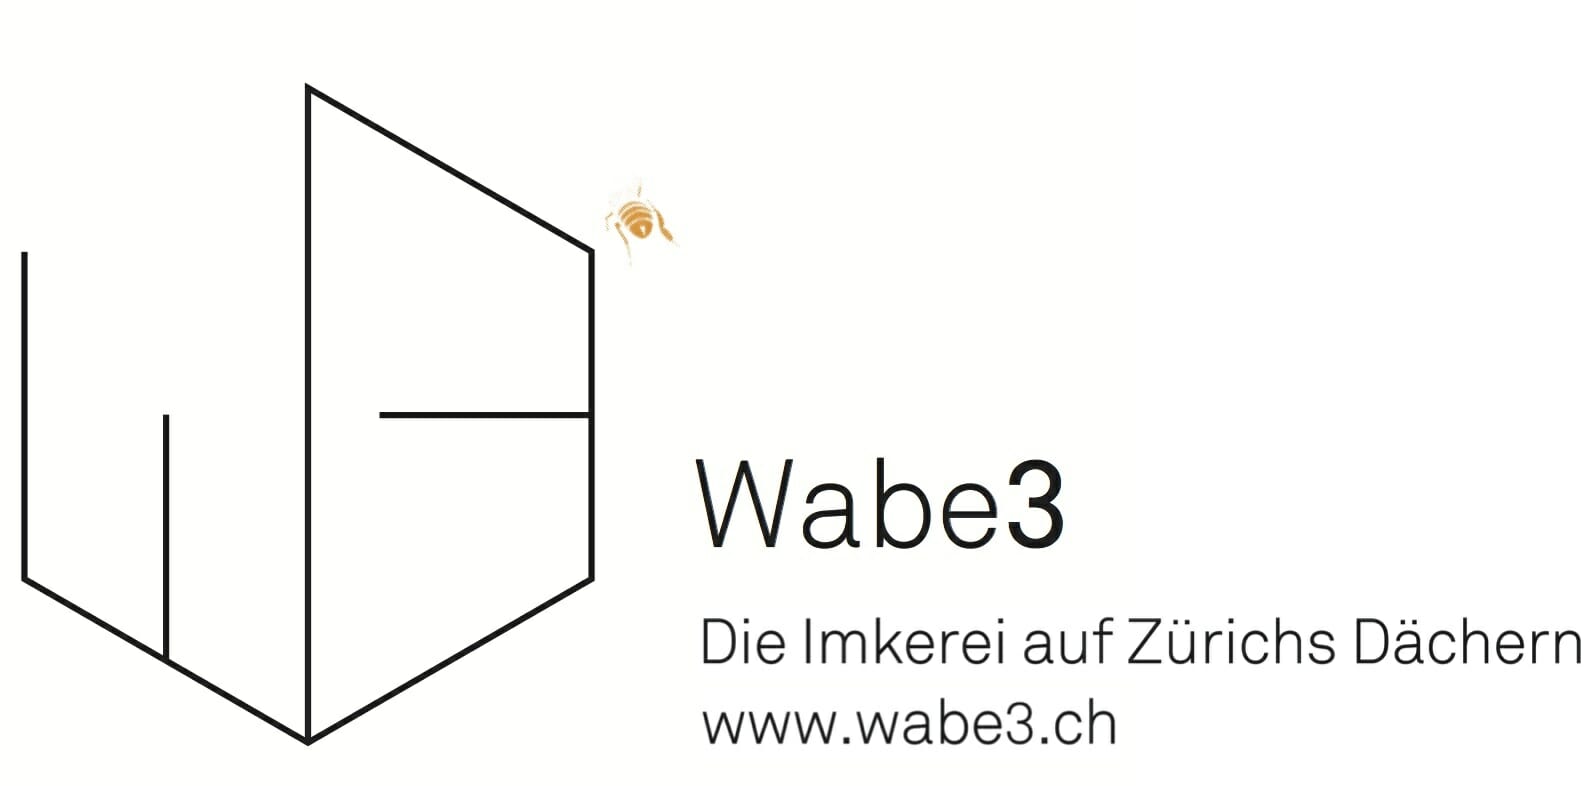 Wabe3